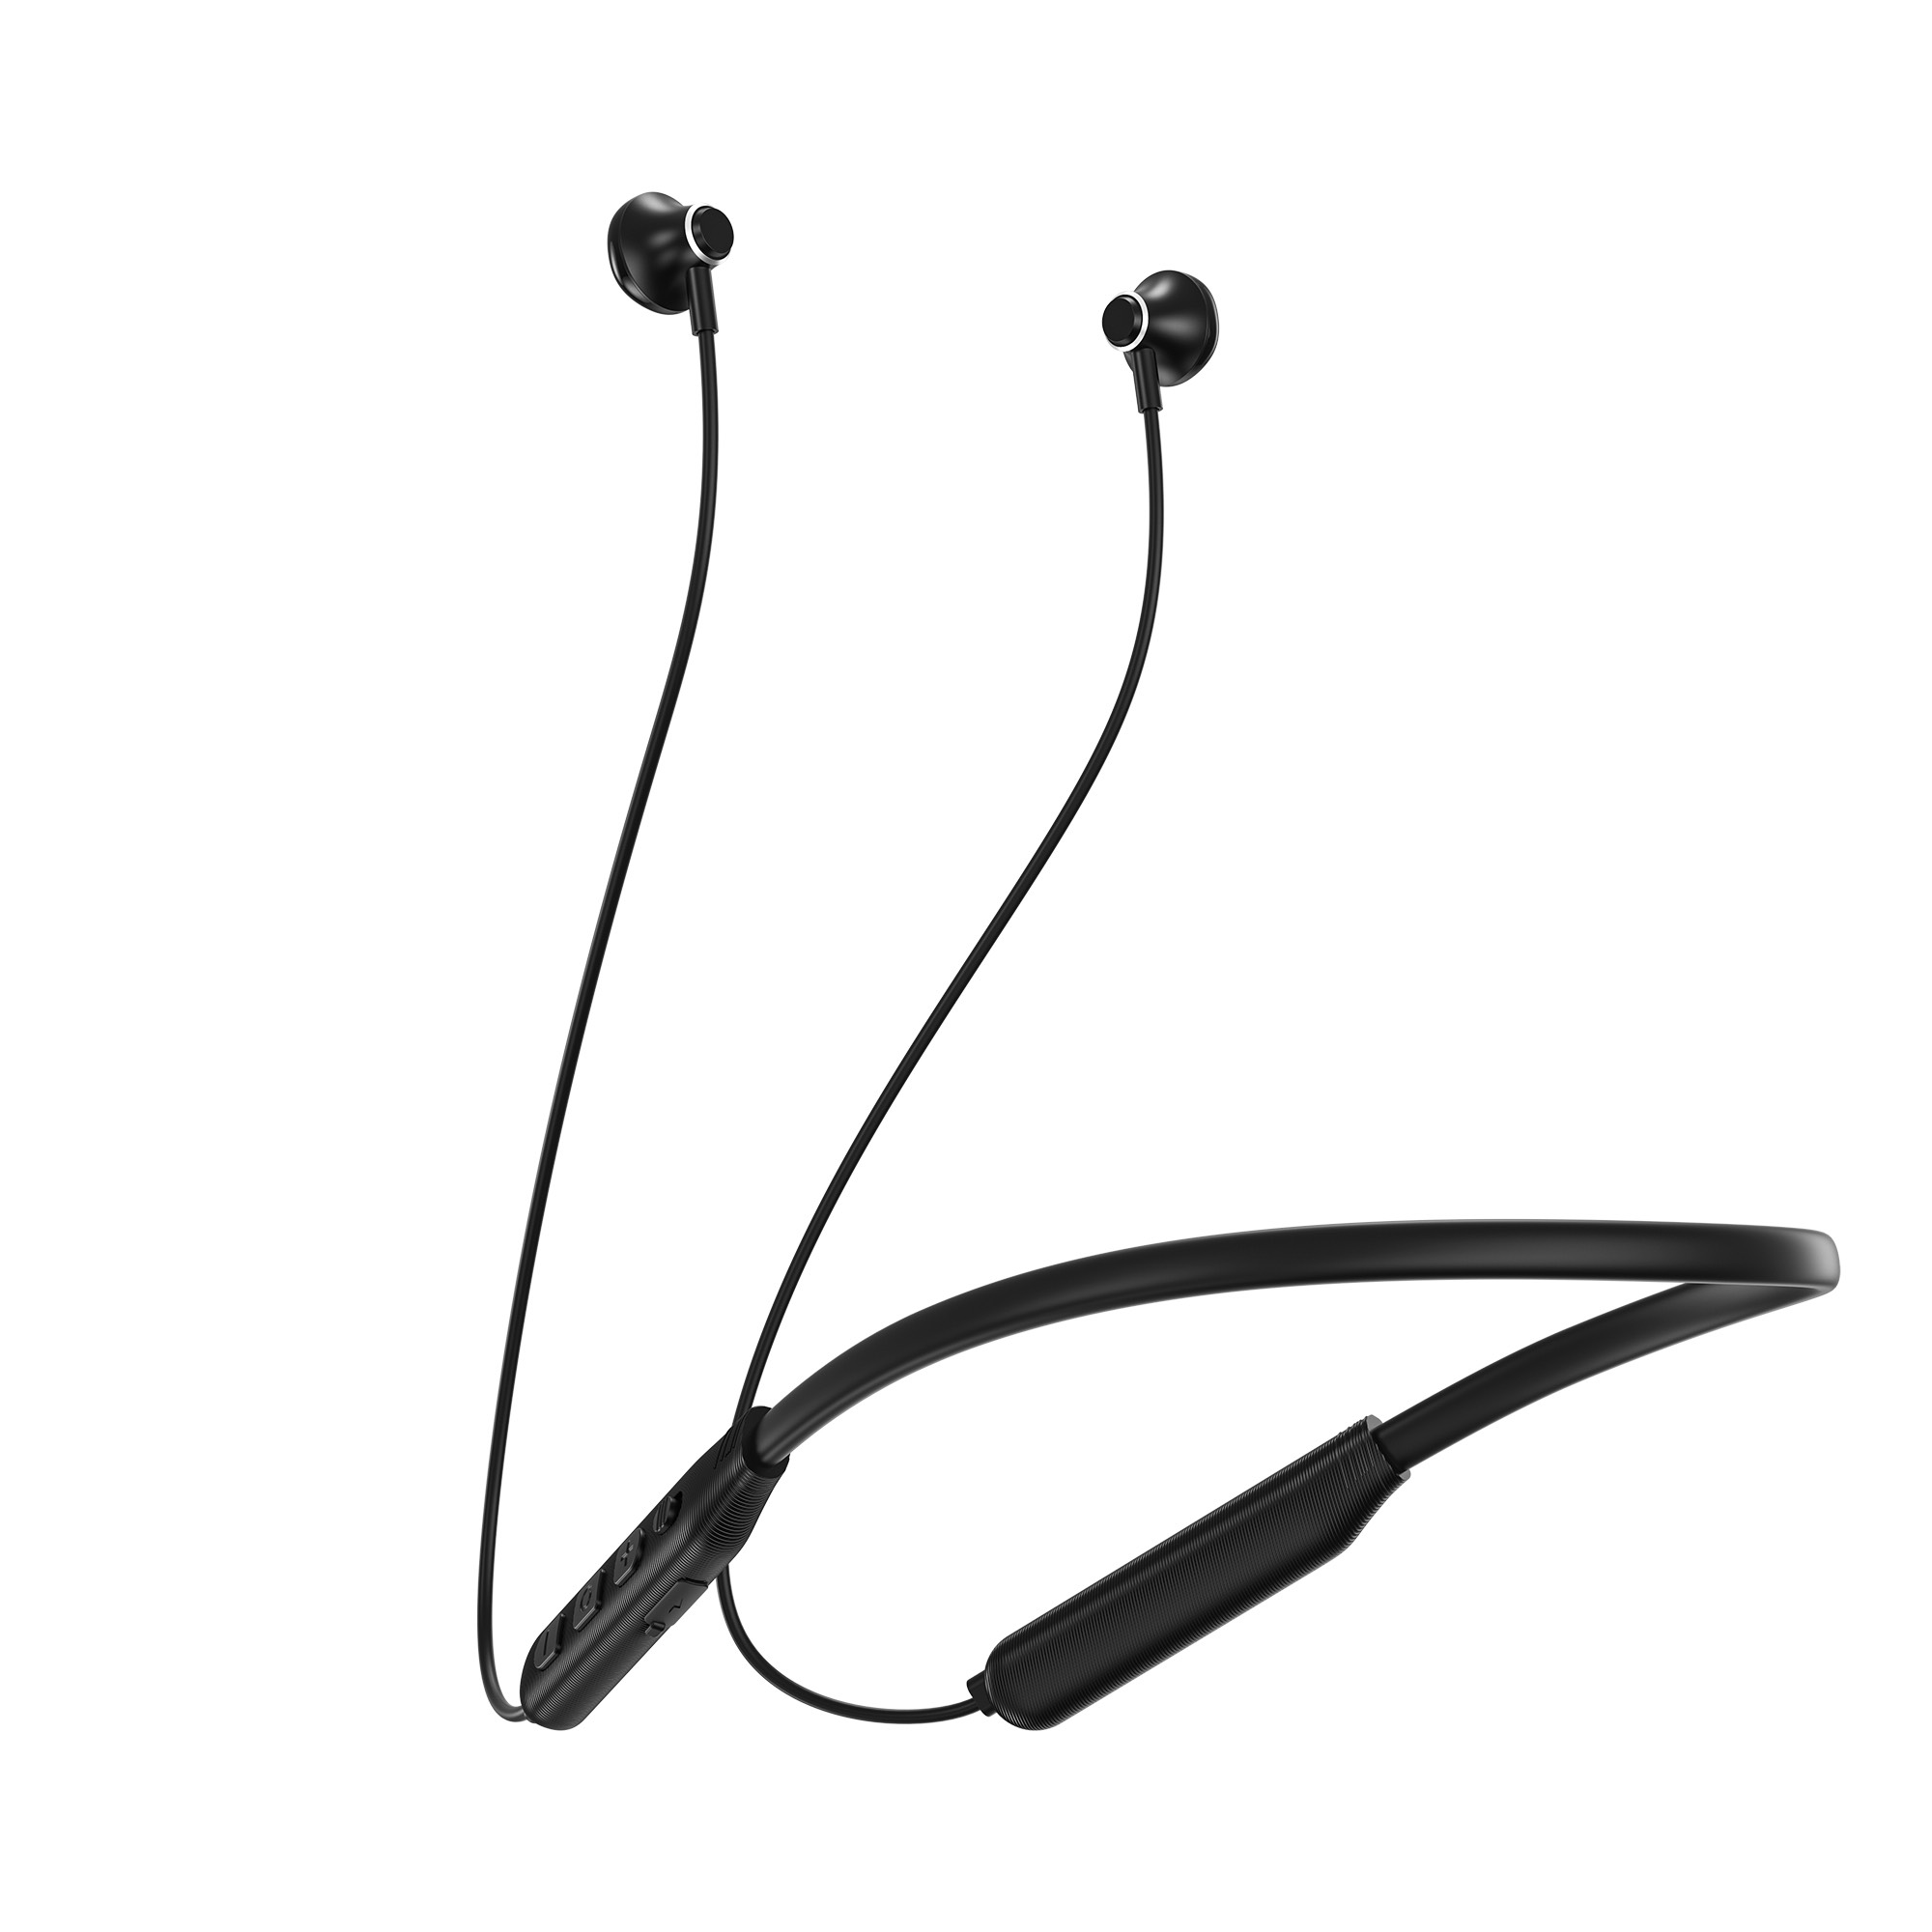 Tai nghe đeo cổ Wiwu Flex GB01 cho các thiết bị có bluetooth, làm bằng chất liệu mềm, âm thanh vượt trội - Hàng chính hãng